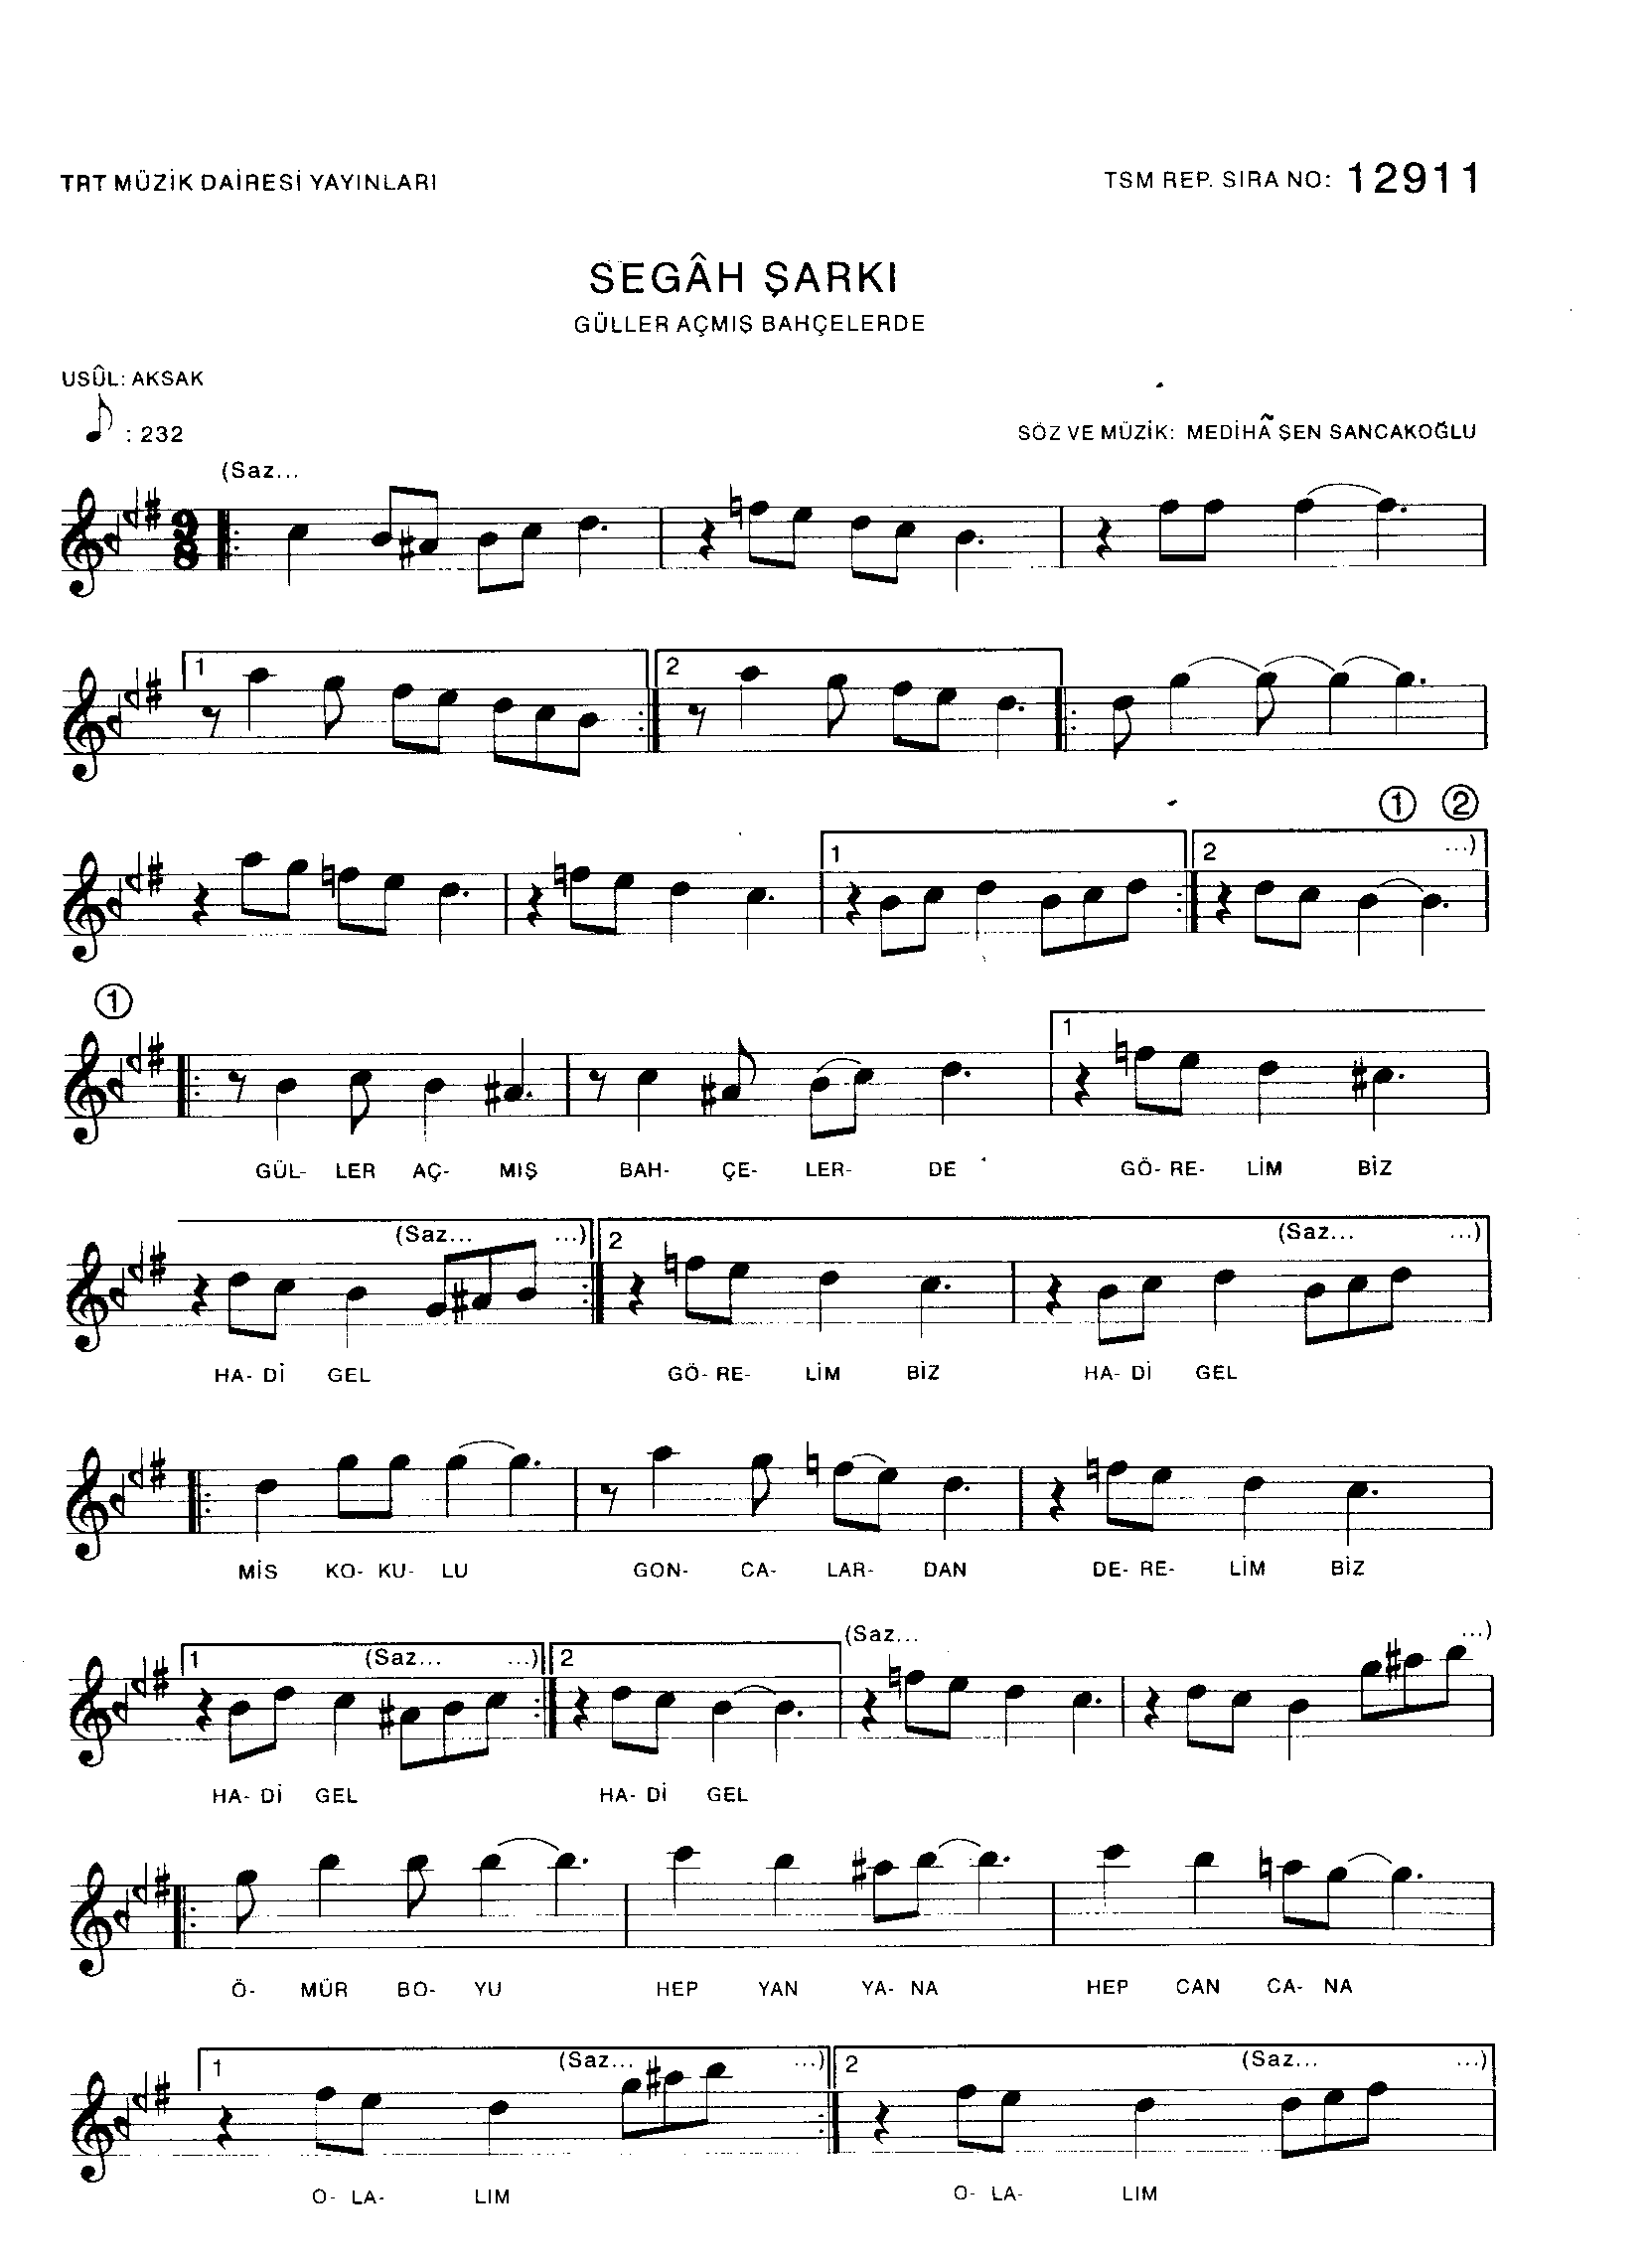 Segâh - Şarkı - Mediha Şen Sancakoğlu - Sayfa 1